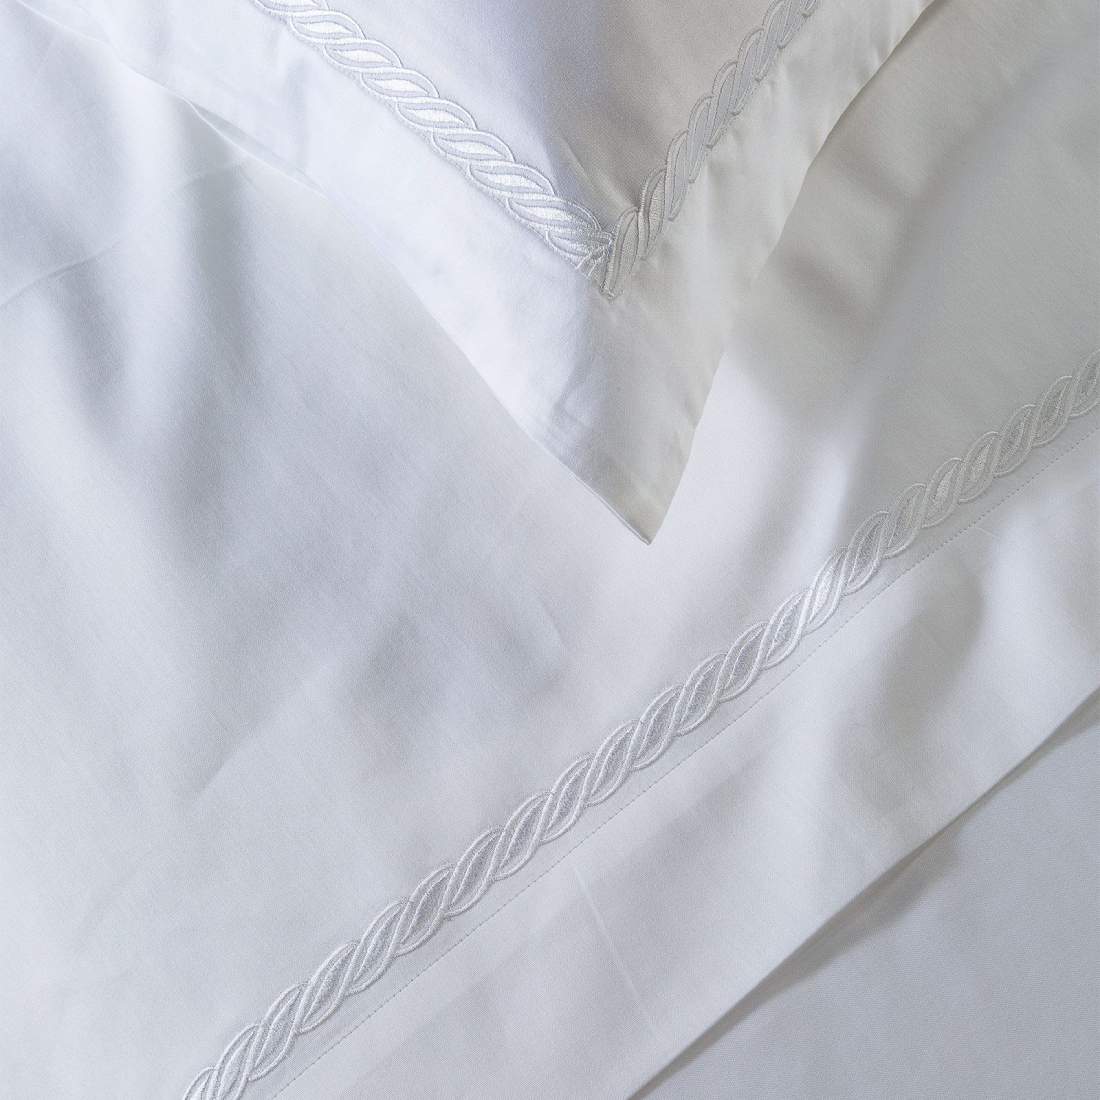 Completo lenzuola matrimoniale Caleffi Treccia, in raso di puro cotone. Il completo lenzuola Treccia è in tinta unita bianca, con elegante ricamo bianco a forma di treccia